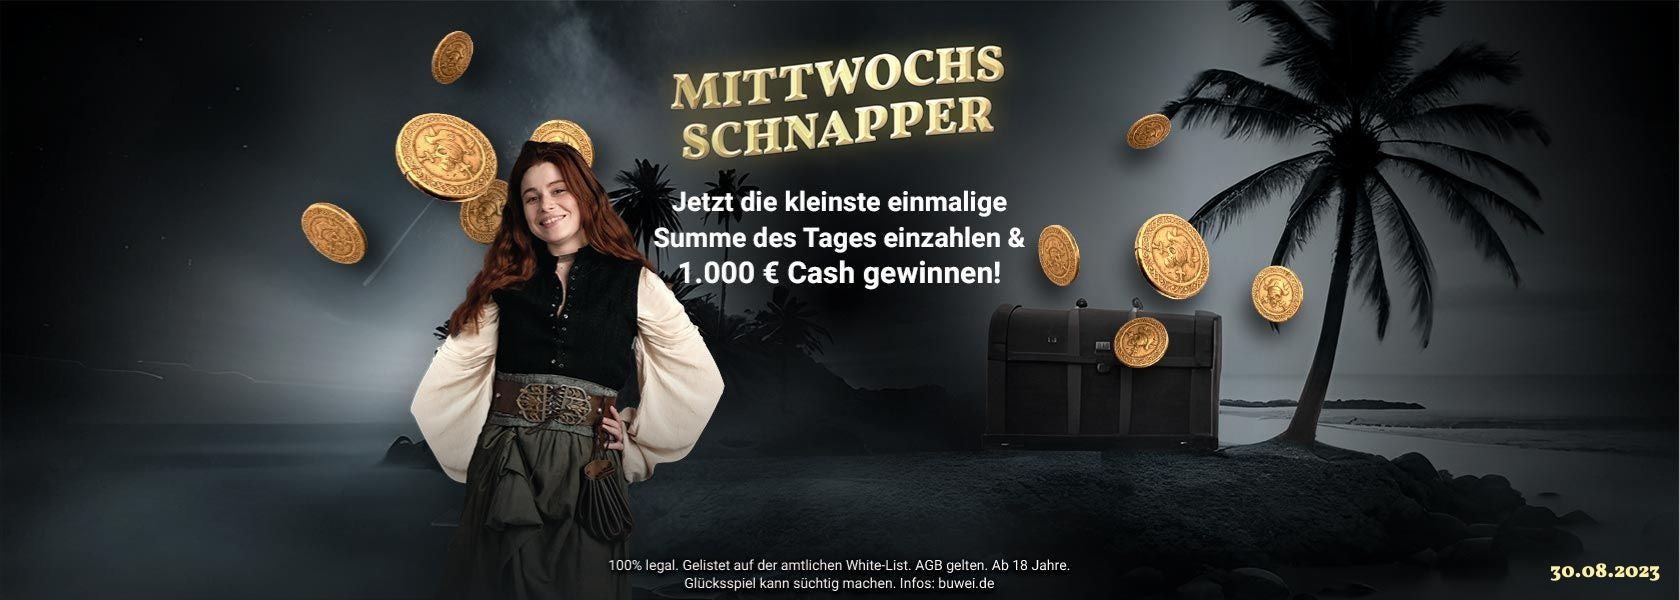 jackpotpiraten-mittwochs-schnapper-300823